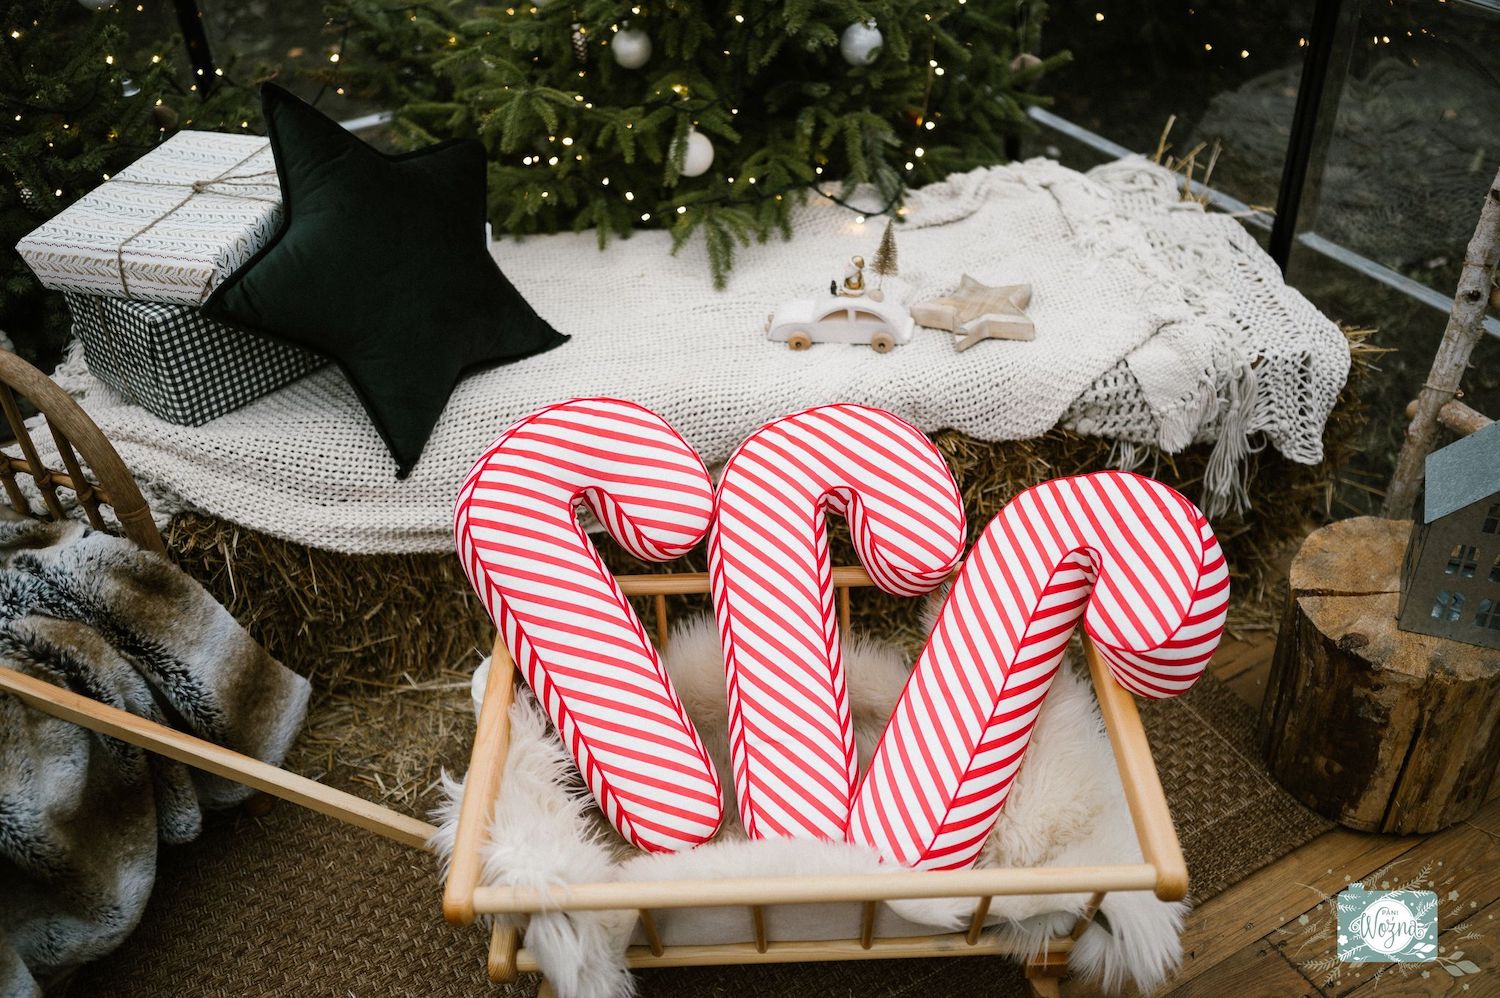 świąteczna poduszka laska w biało czerwone paski od Bettys Home dekoracja pod choinką w szklarni